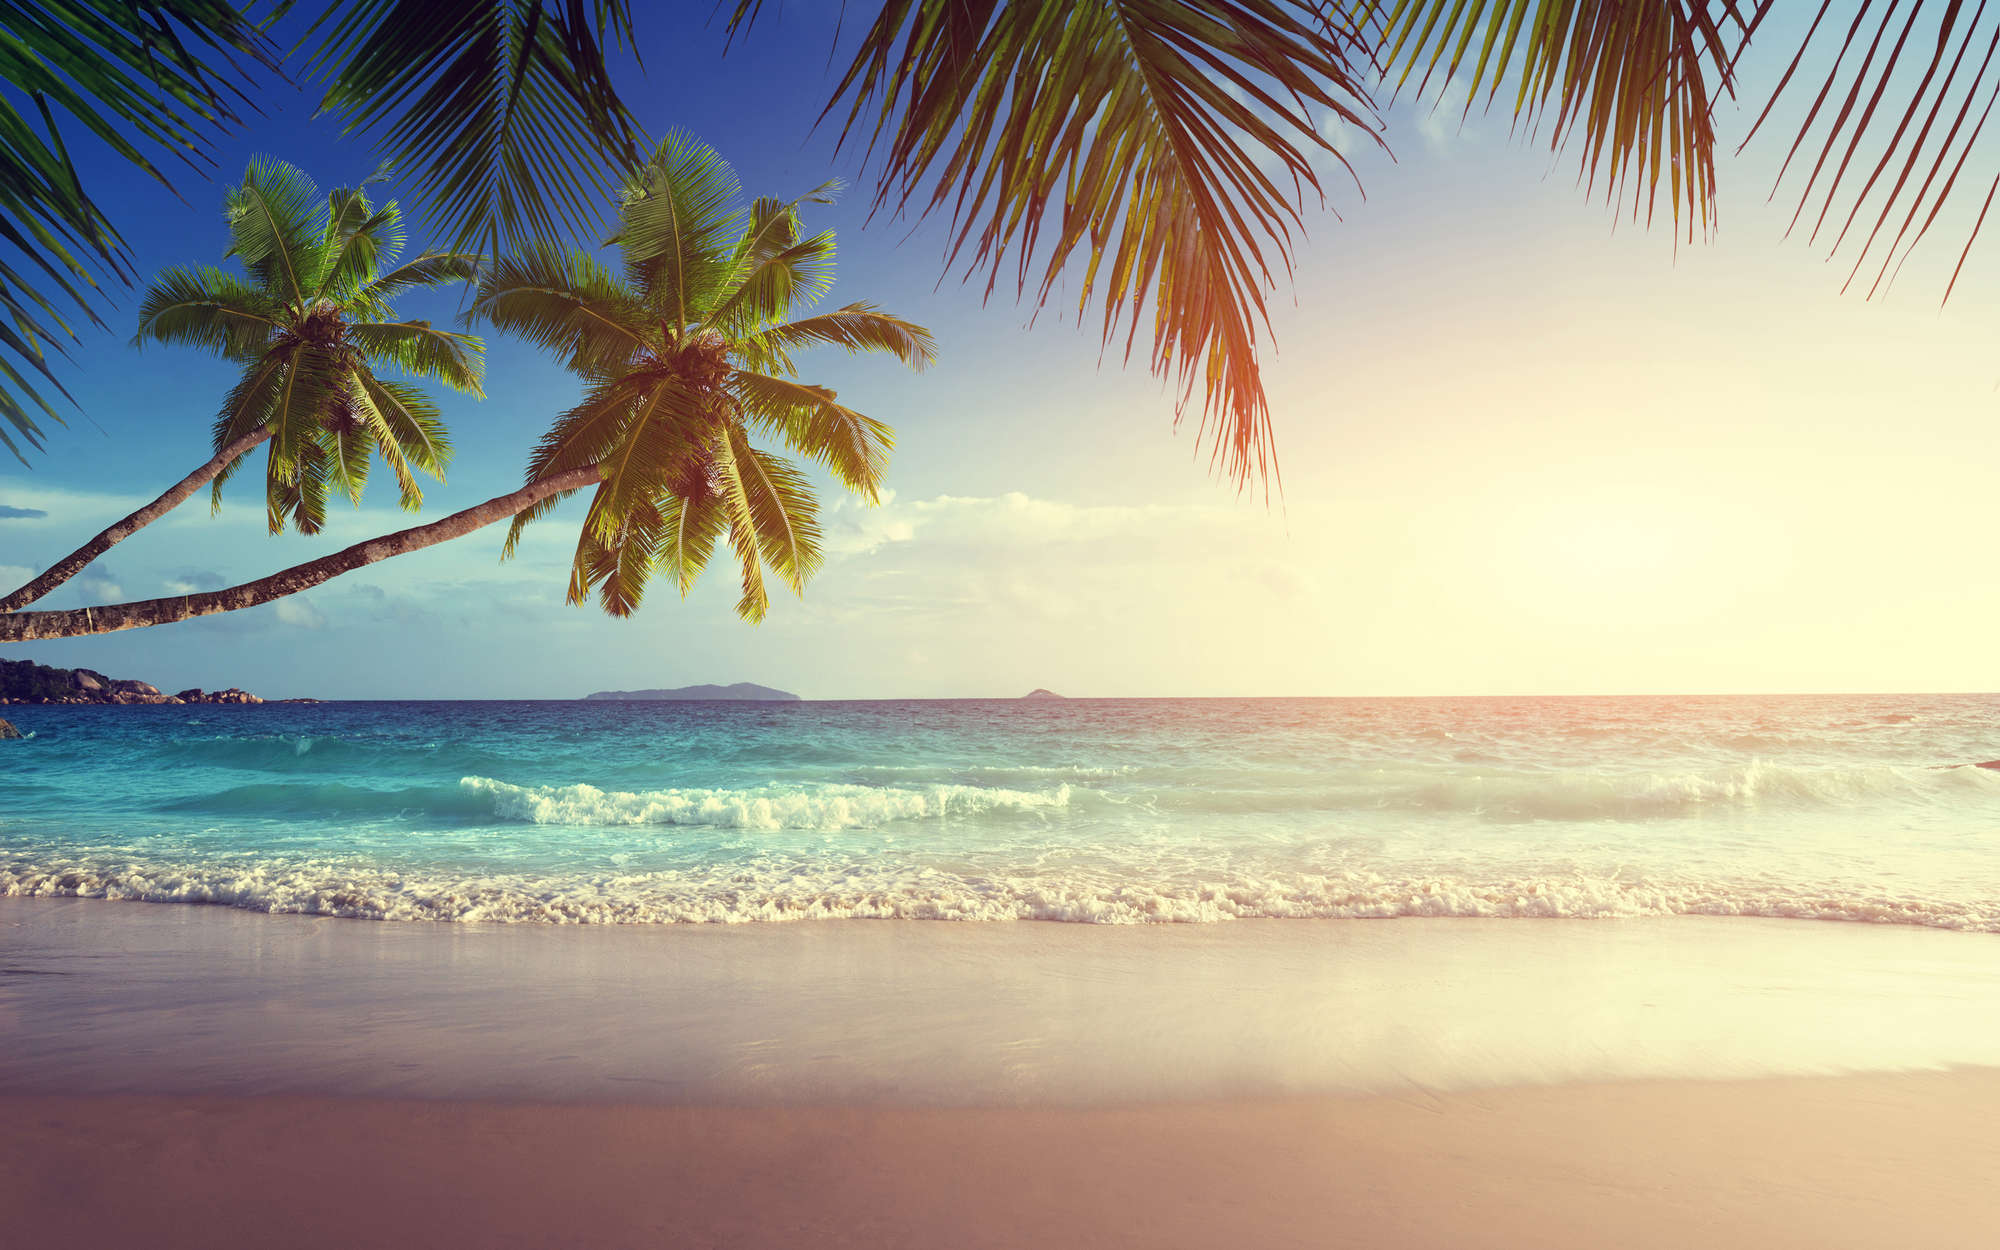             Fotomurali Seychelles con palme - Pile liscio di qualità superiore
        